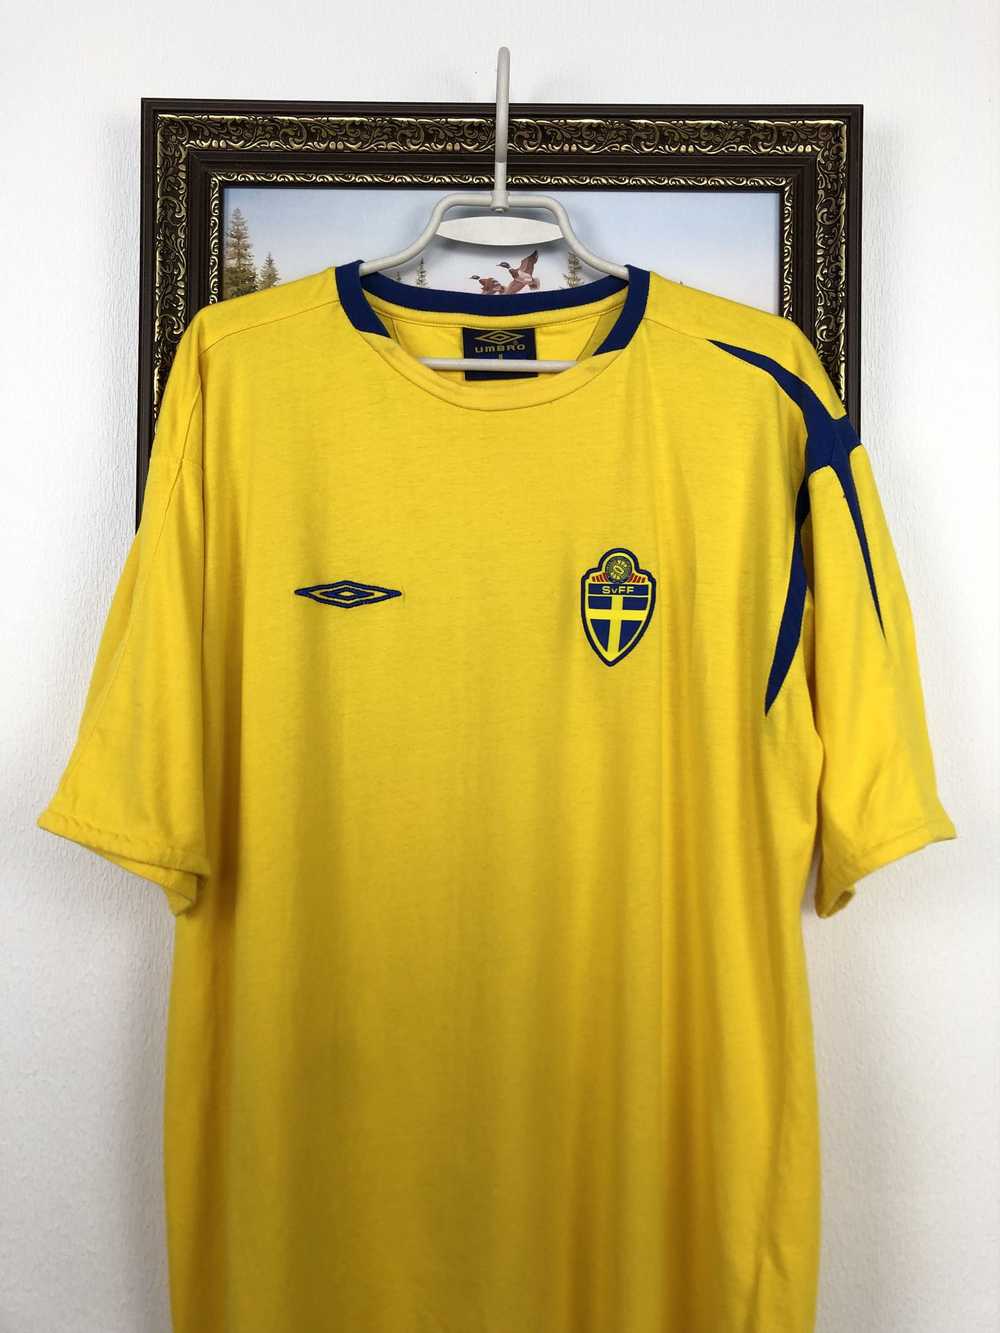 Soccer Jersey × Sportswear × Vintage Vintage Swed… - image 2